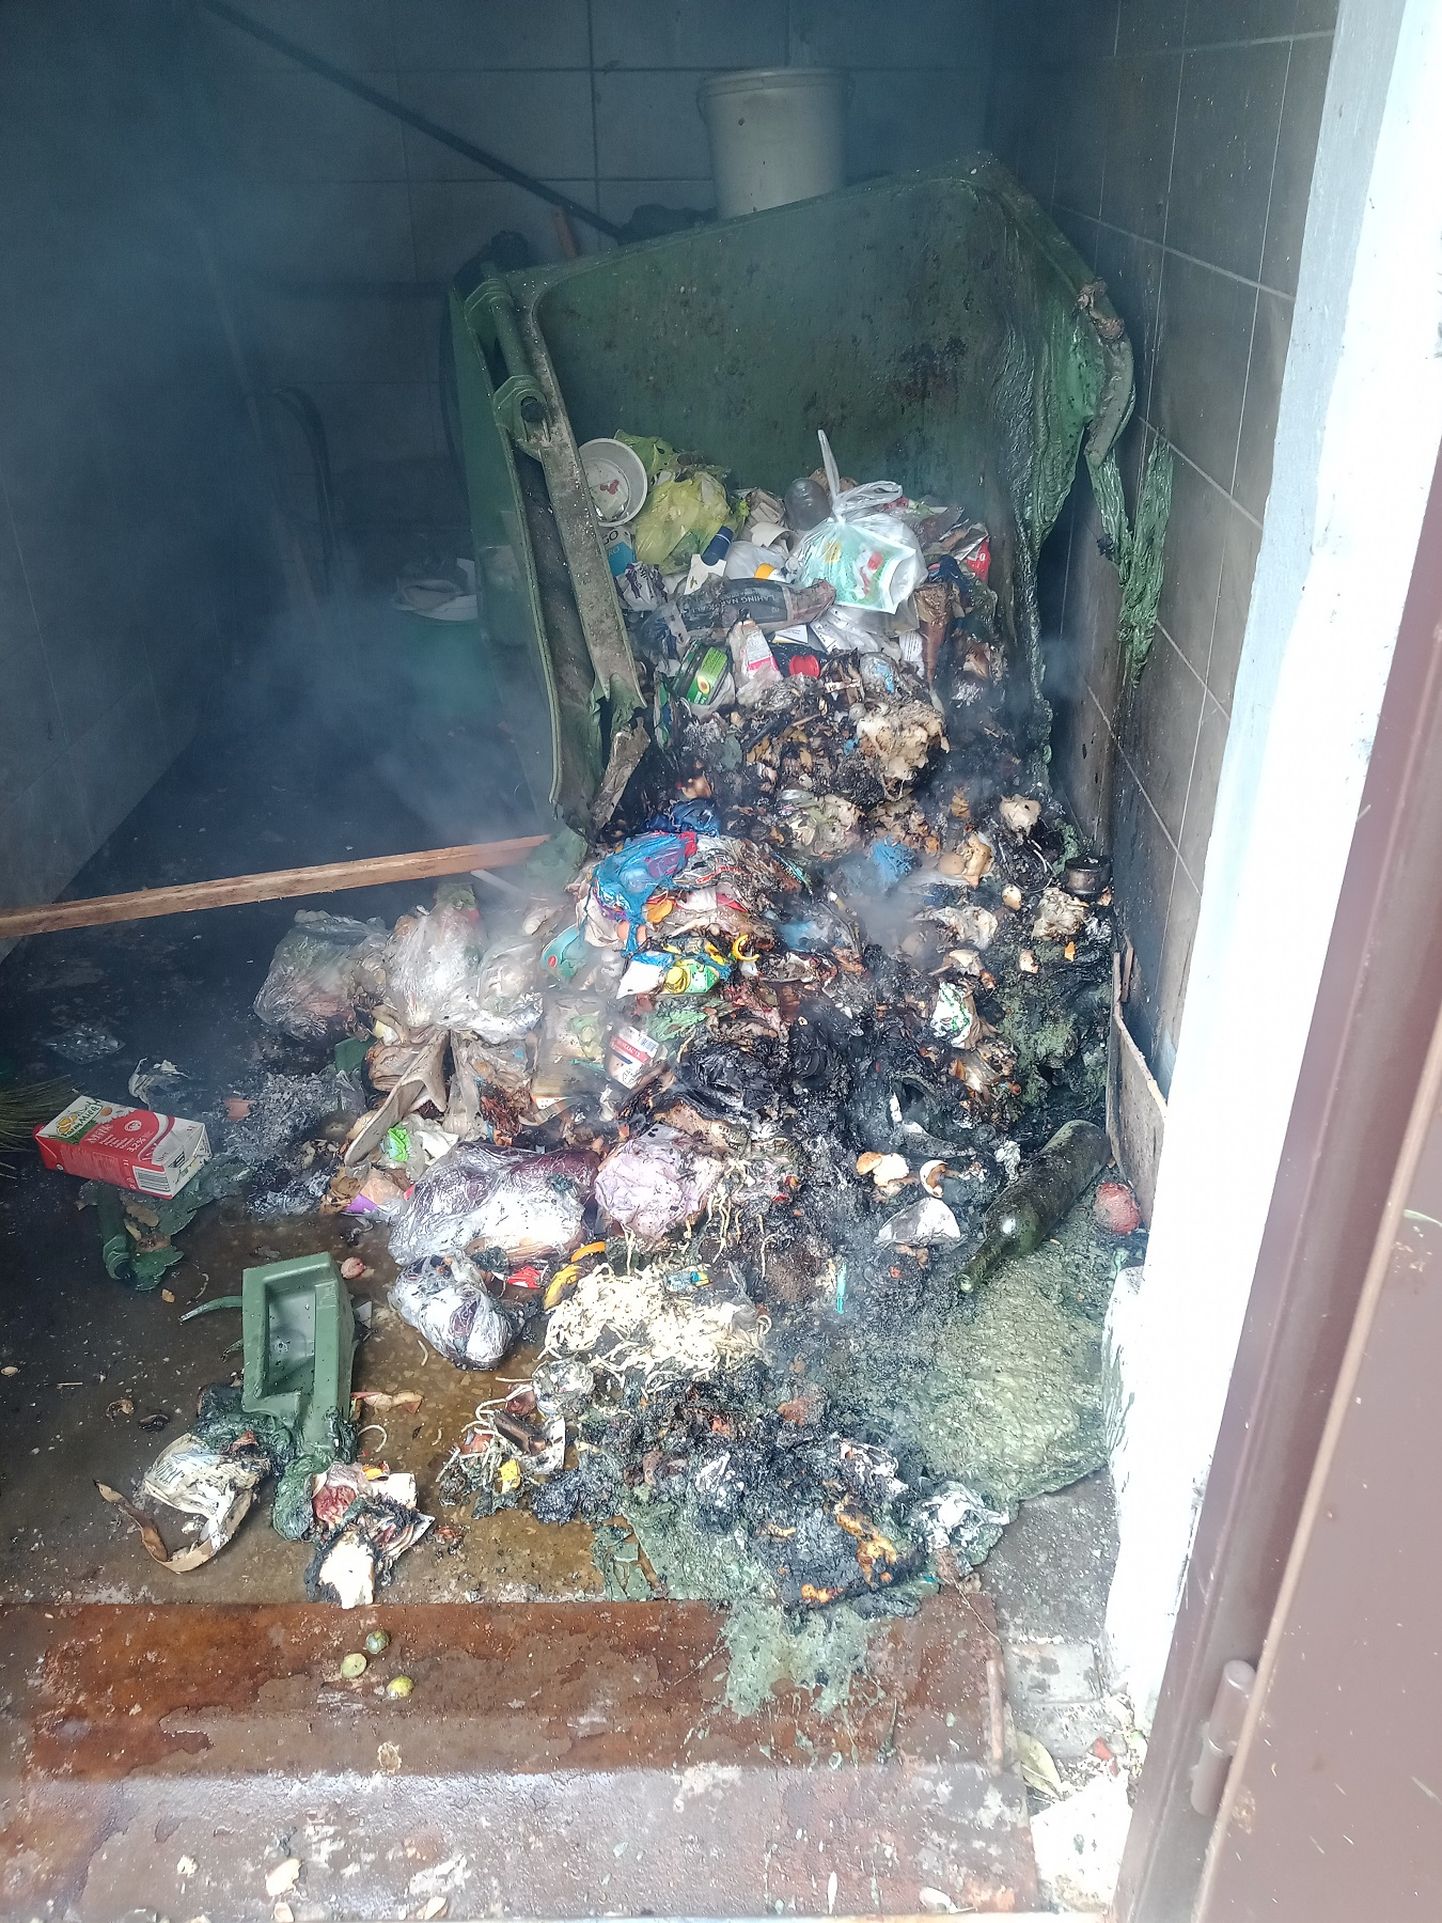 Брошенный окурок мог стать причиной возгорания в мусоропроводе одного из многоквартирных домов Нарвы.